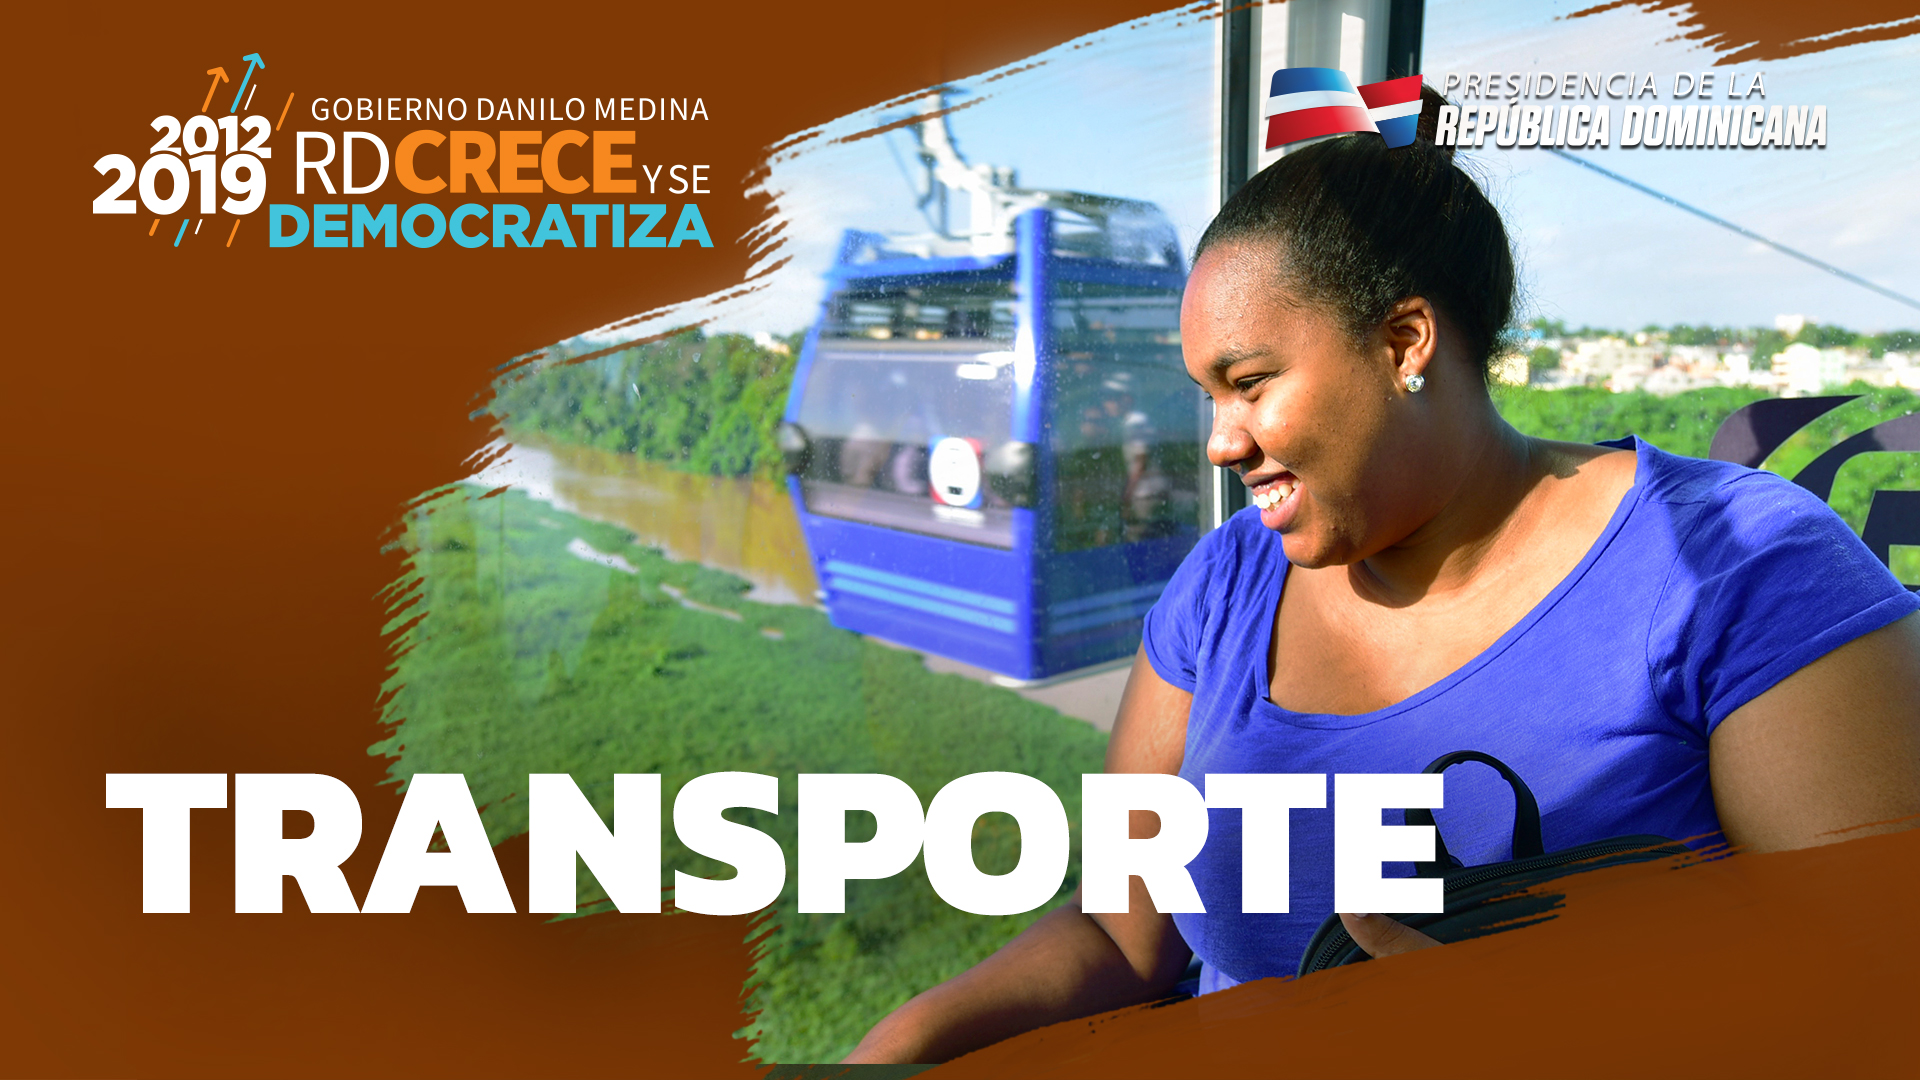 REPÚBLICA DOMINICANA: Dominicanos se trasladan de manera más cómoda y rápida. Ahorran tiempo y dinero, gracias a democratización del transporte